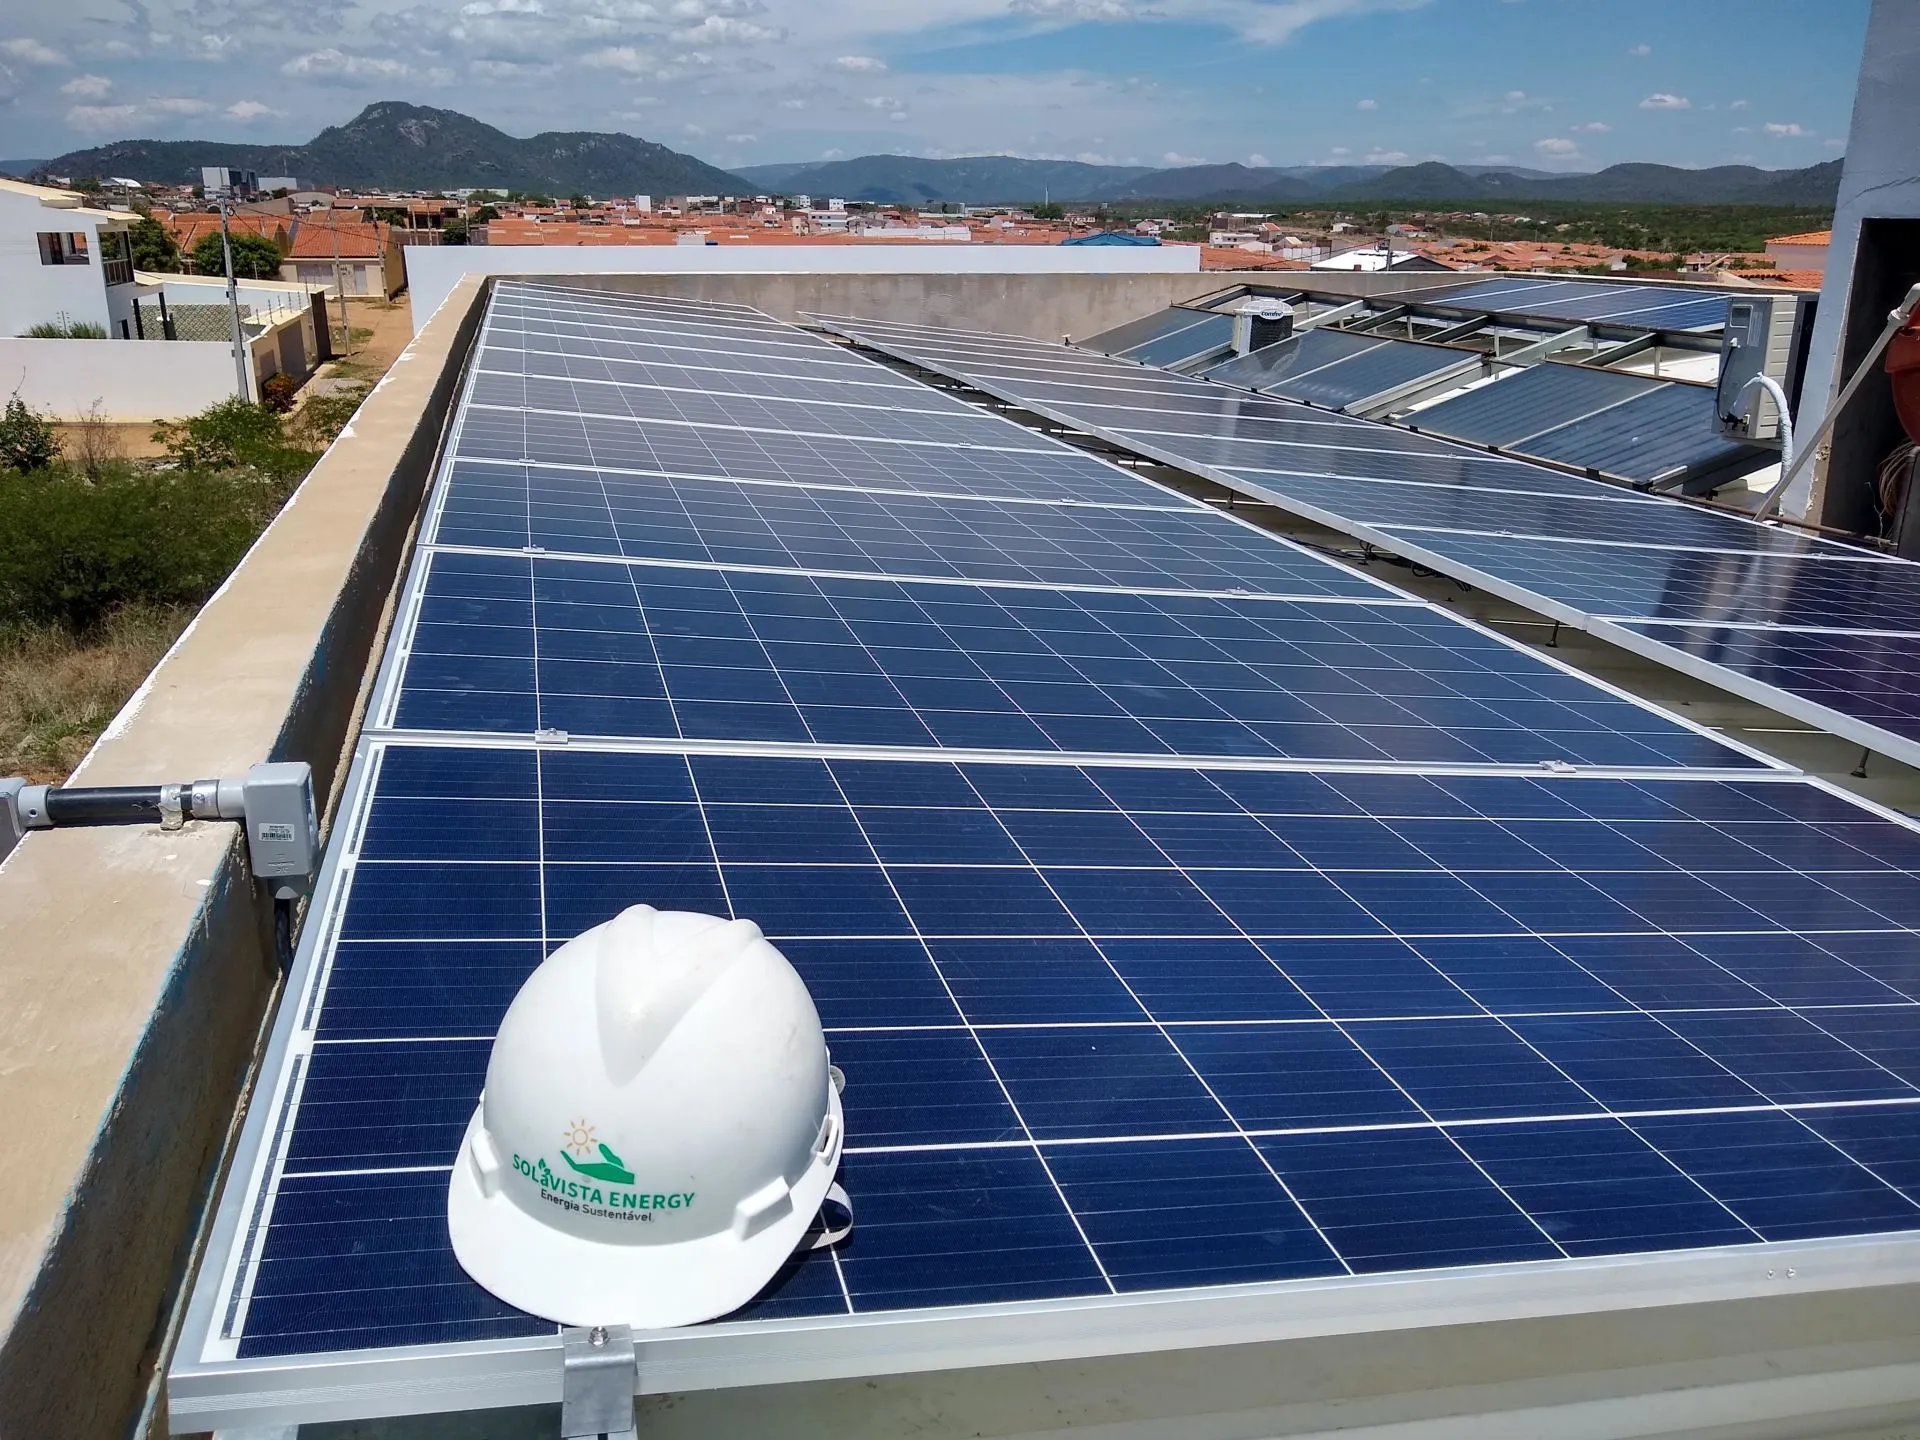 Sistema instalado no município de Serra talhada-PE. Composto por 32 módulos Solar Fotovoltaico de potência 330W e 08 Micro inversor APSystems-QS1. Com plataforma para monitoramento Online nivel módulo a módulo.